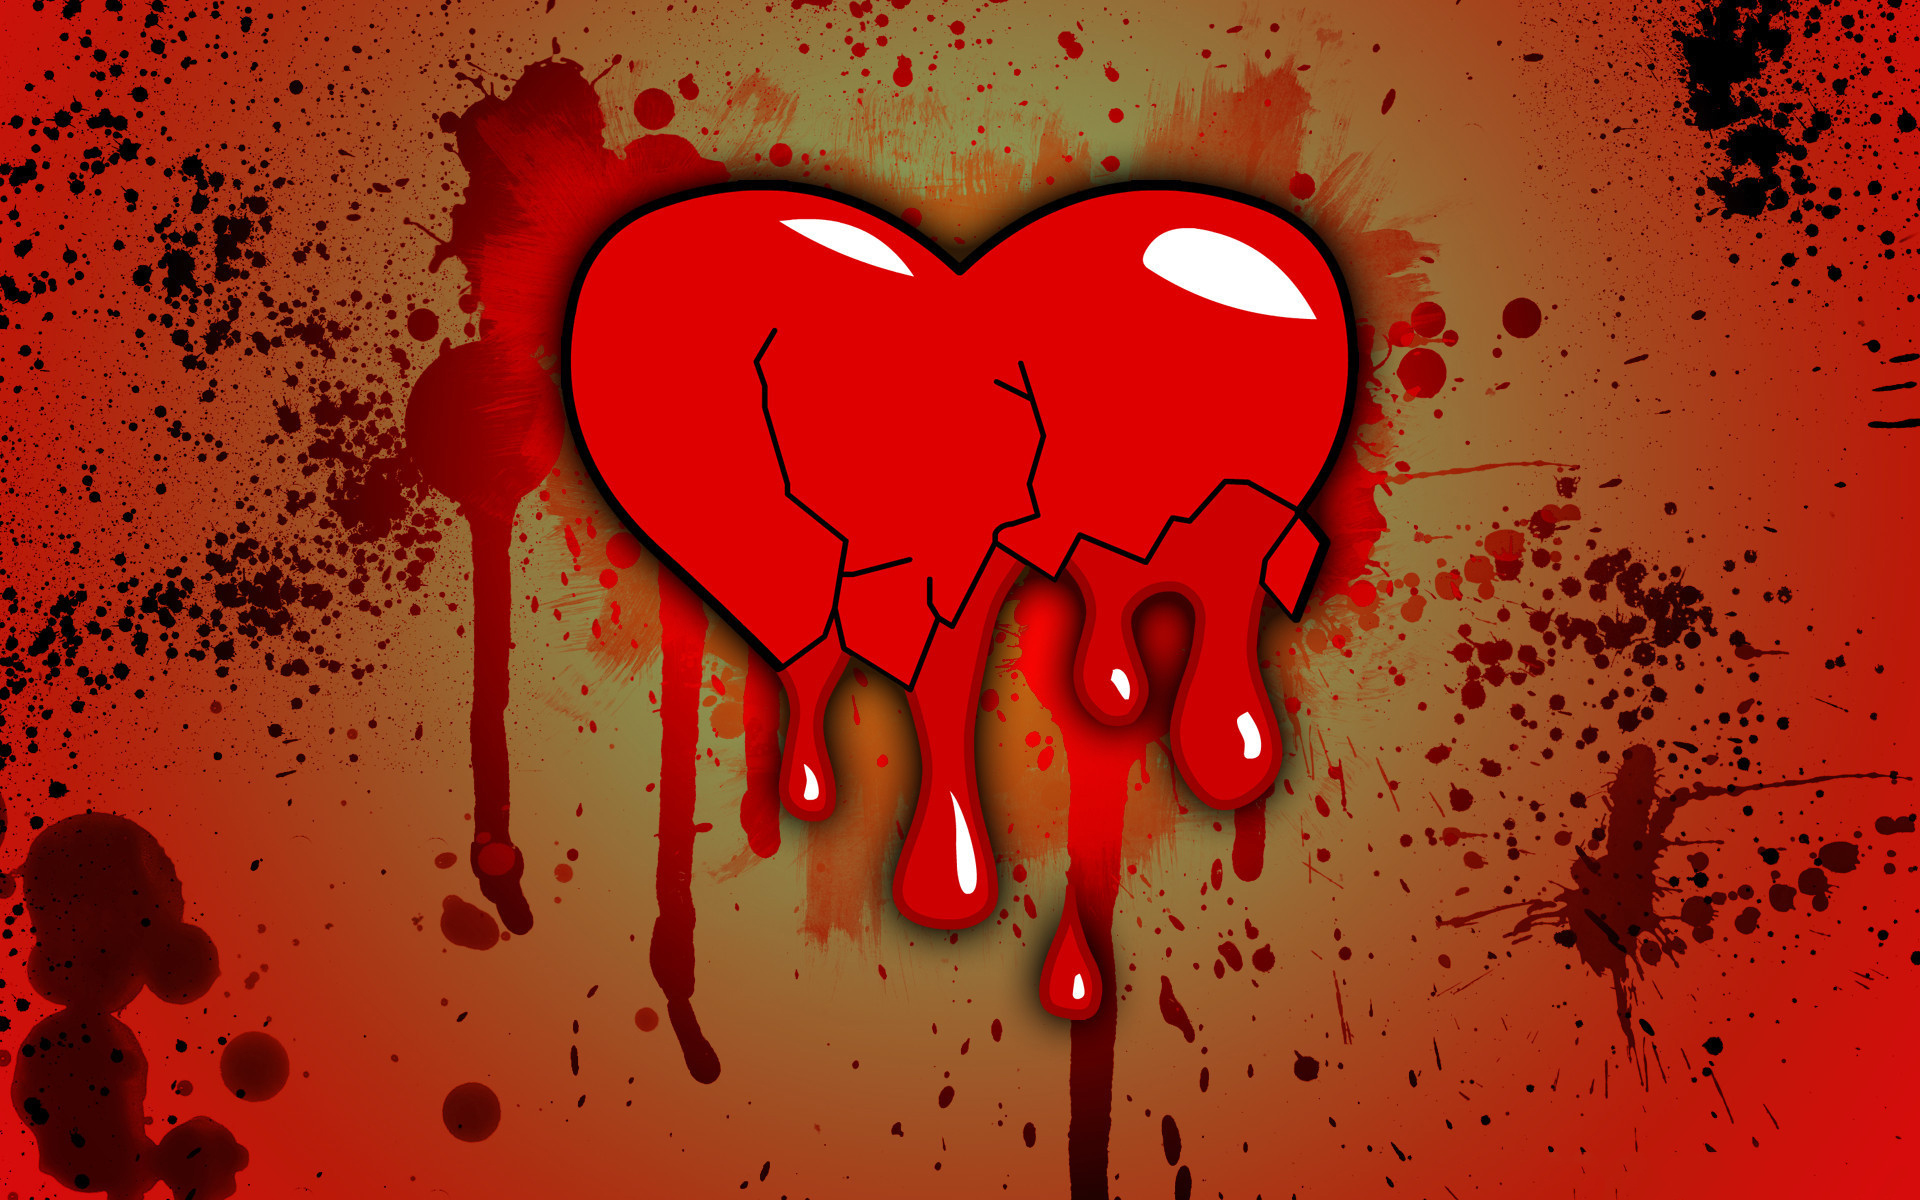 Trái tim buồn: Trái tim buồn có thể đến từ rất nhiều nguyên nhân, nhưng chúng đều ảnh hưởng đến tâm lý và cảm xúc của con người. Hãy tìm hiểu về các biểu tượng và hình ảnh thuộc chủ đề \